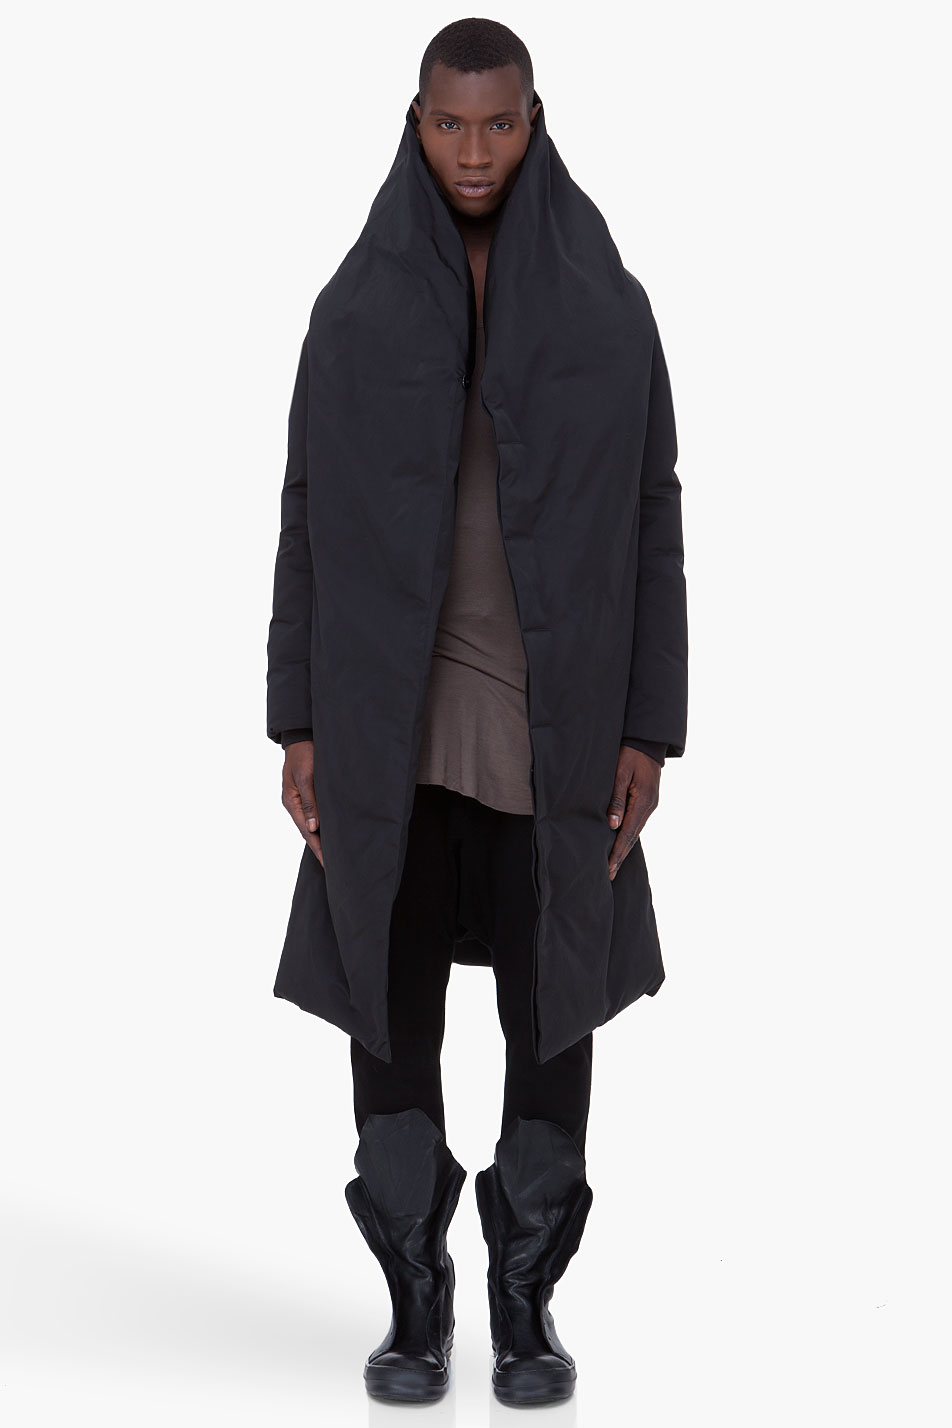 Long black padded coat